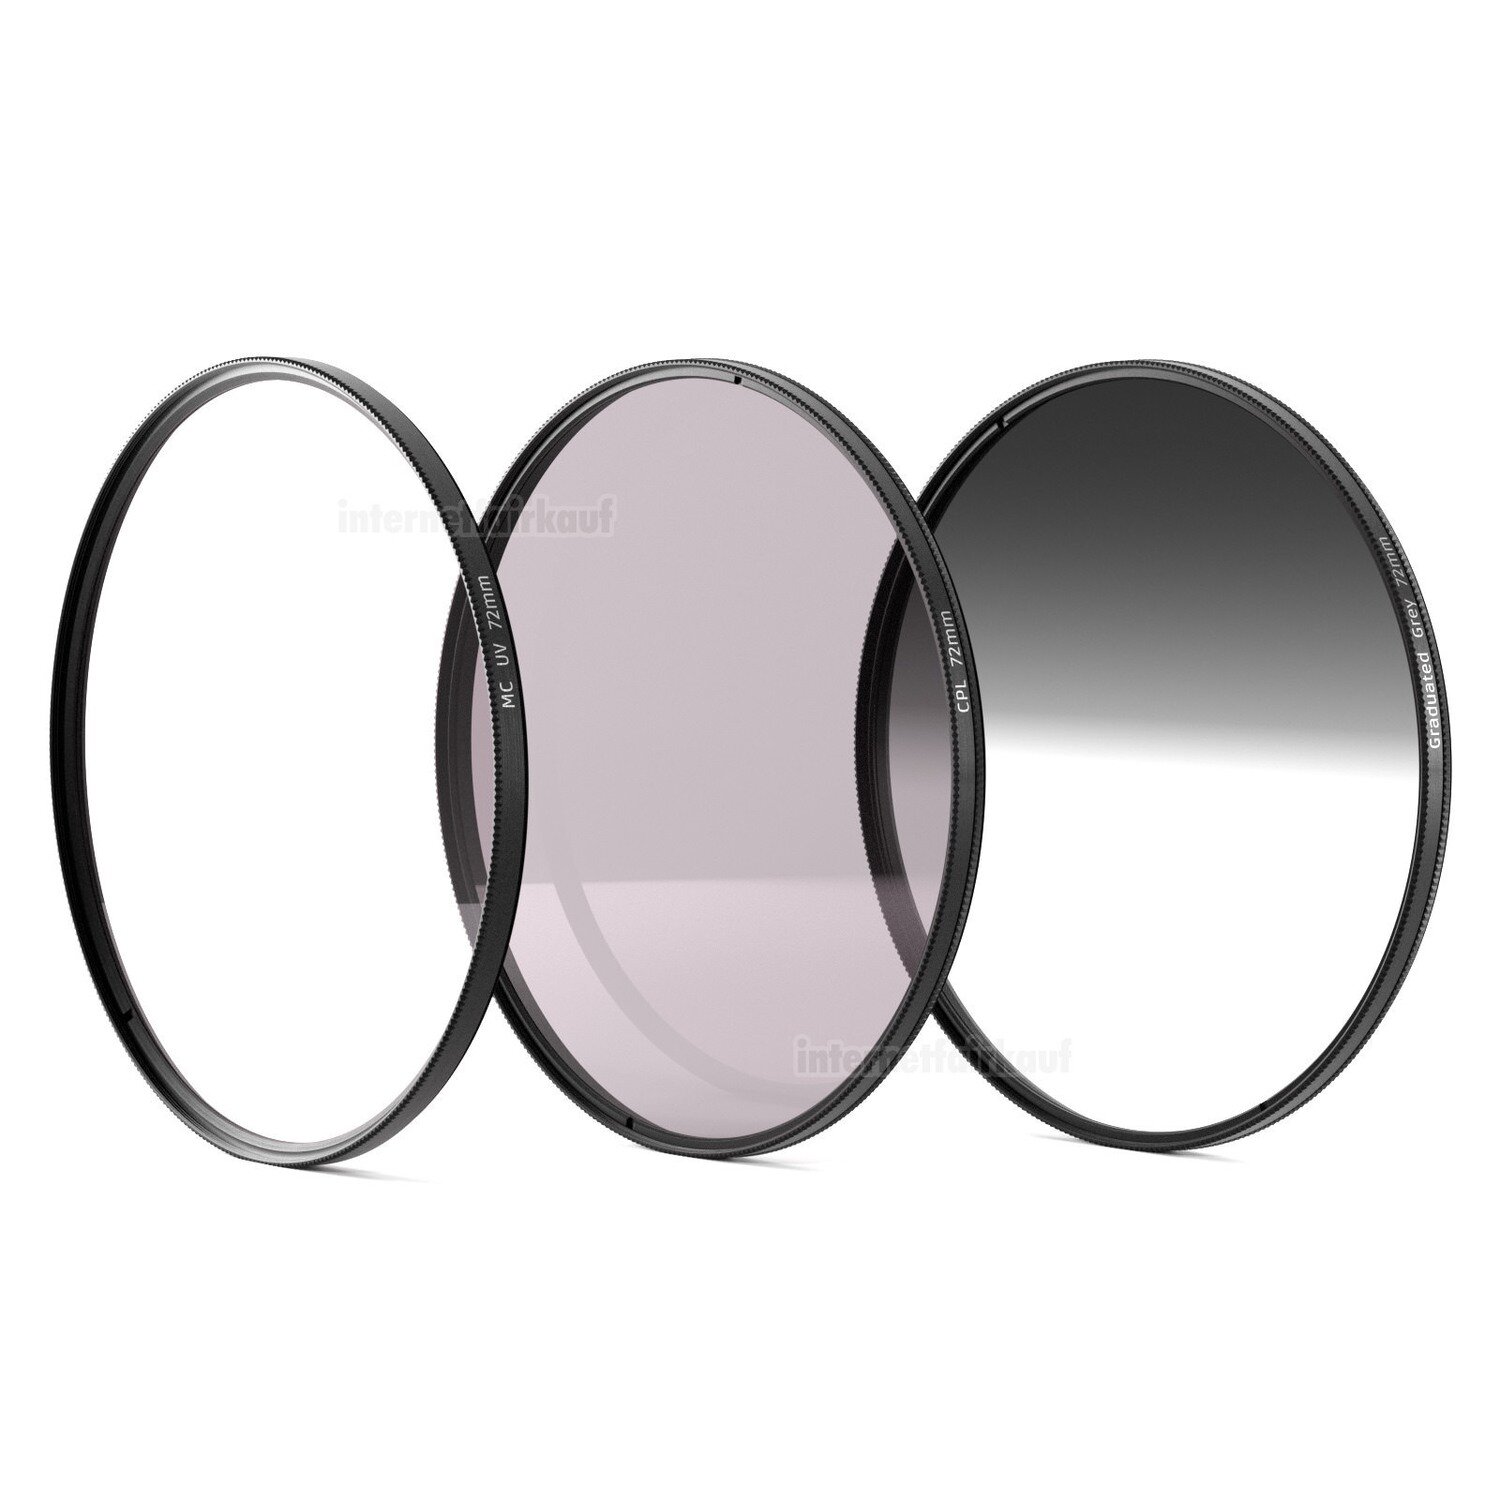 Set UV + POL-Filter + Grauverlaufsfilter passend für Sony DSC-RX10 III + IV